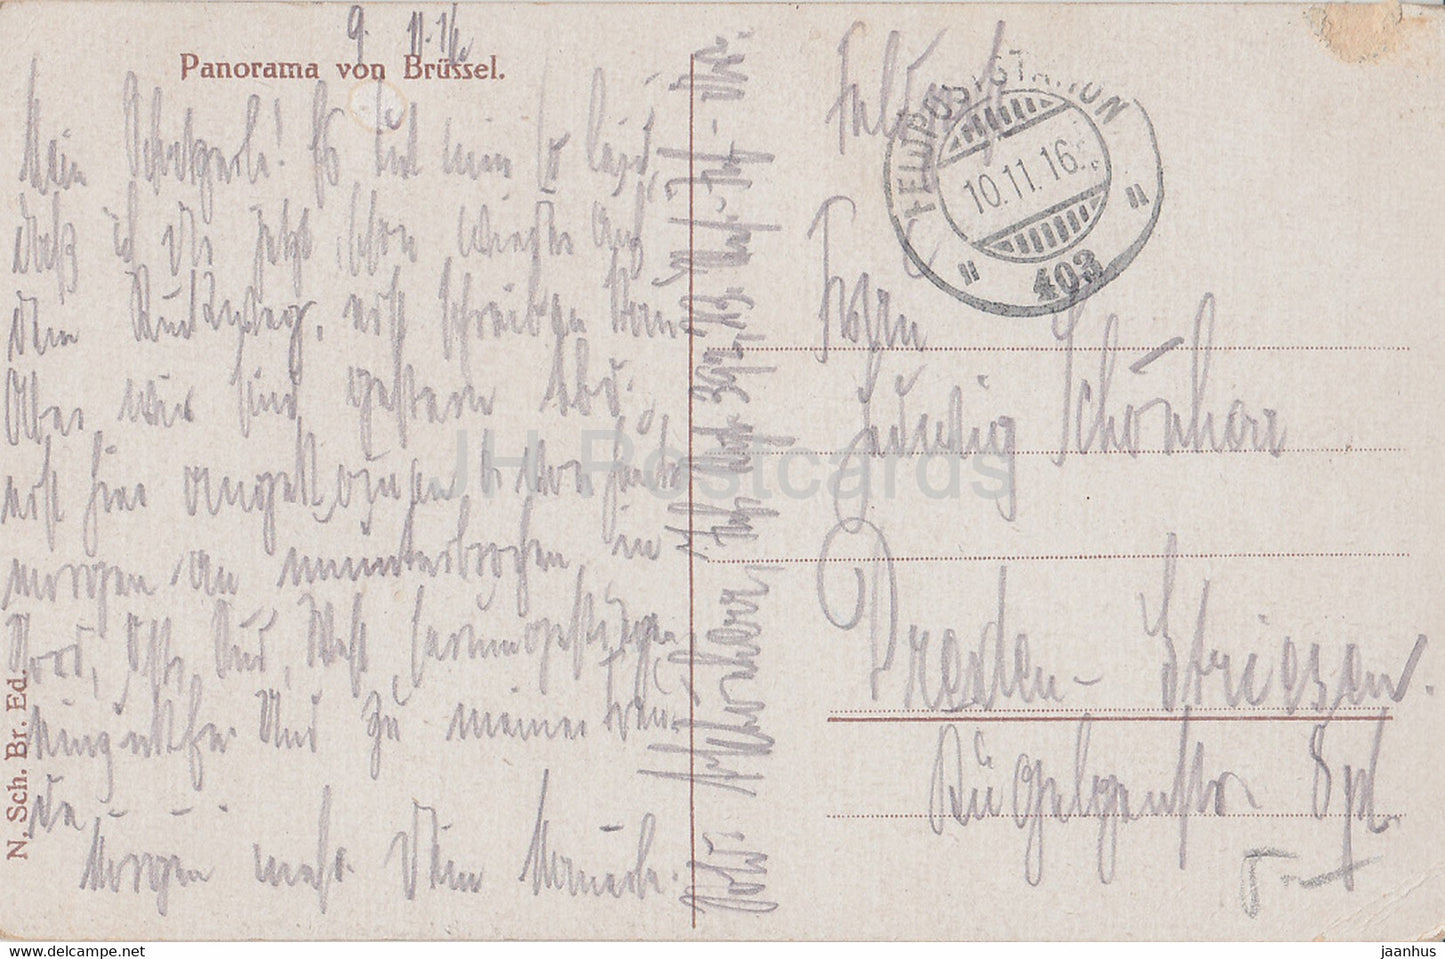 Bruxelles - Bruxelles - Panorama - Feldpost - carte postale ancienne - 1916 - Belgique - utilisé